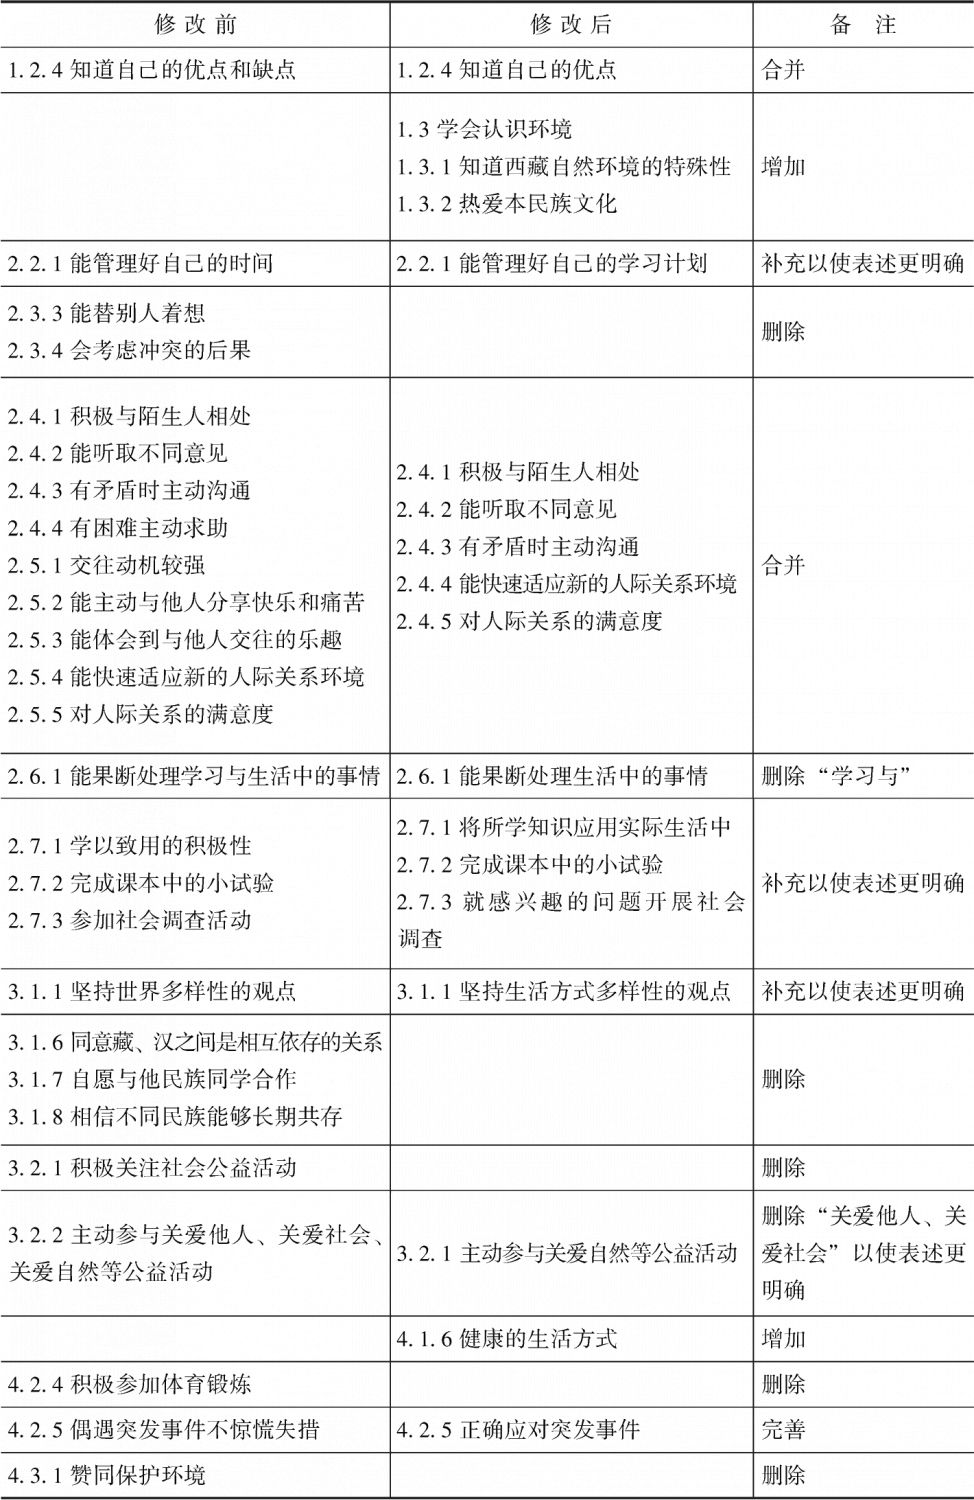 表4-3 内地西藏班教育成效评价指标修订前后对照